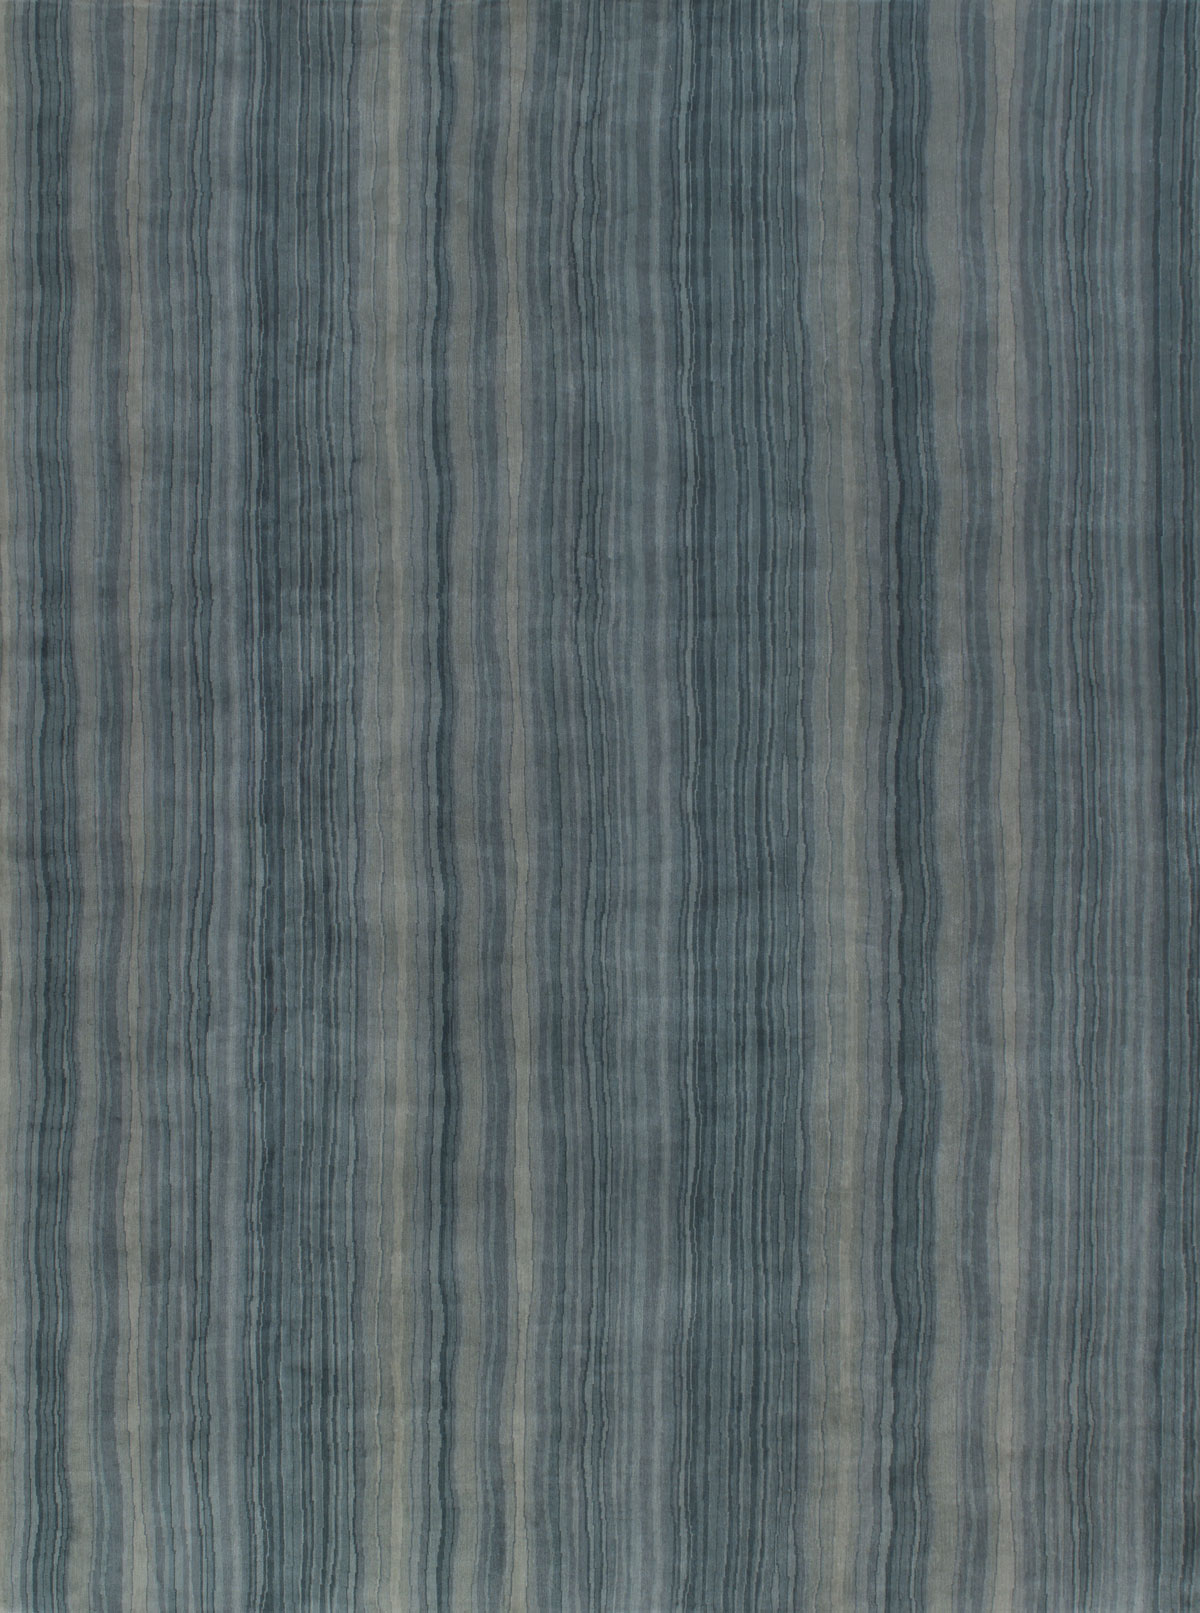 Jaen Jade Striped Handknotted Rug ☞ Size: 300 x 400 cm